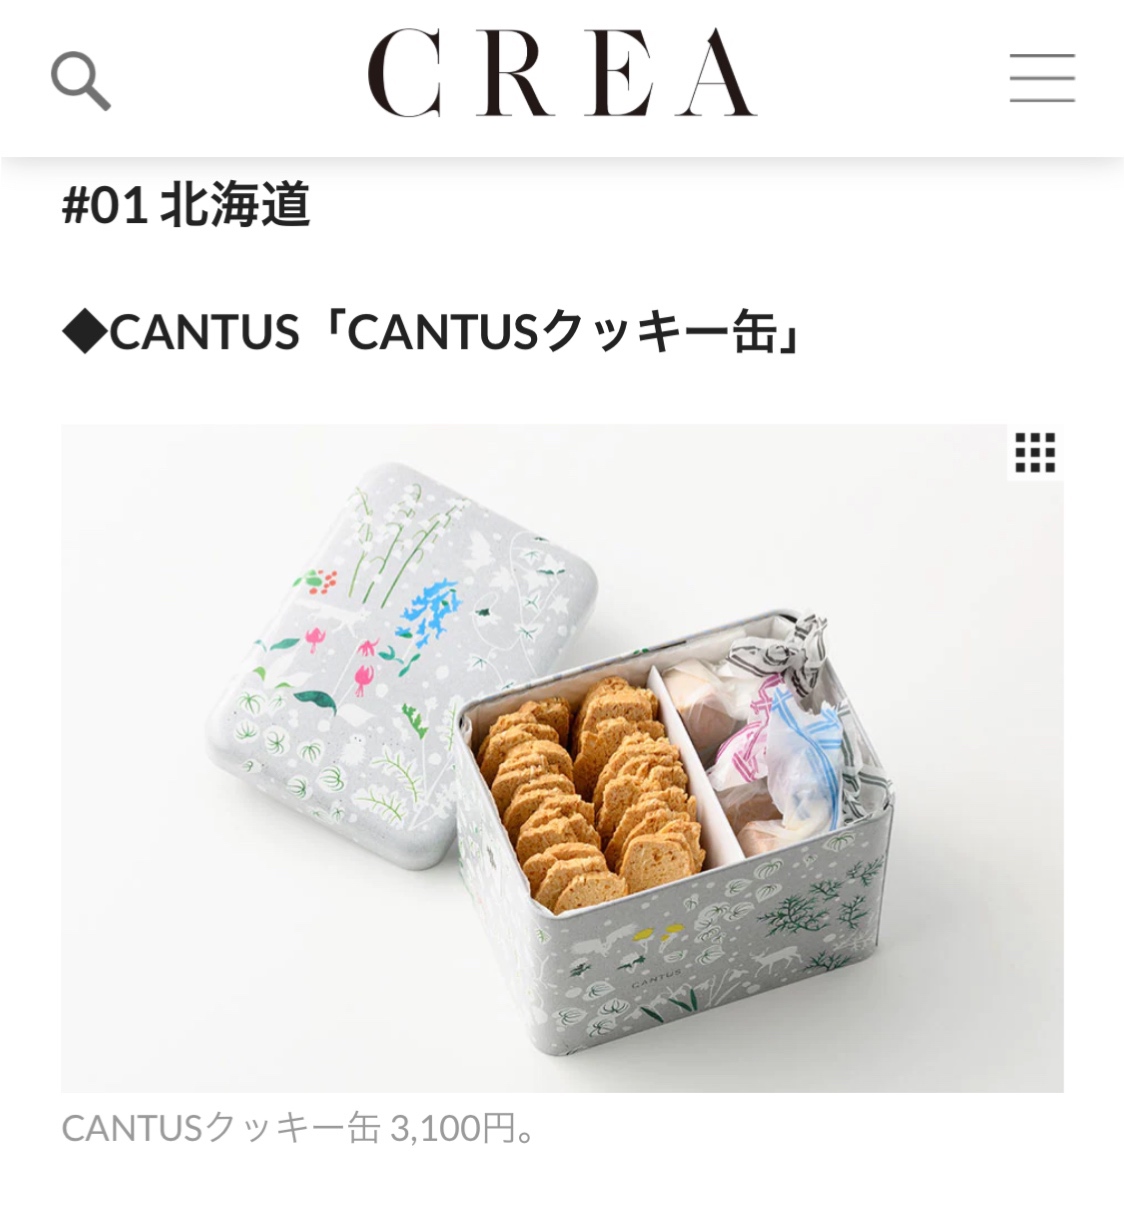 【文藝春秋CREA WEB】47都道府県の「かわいい缶」特集に掲載して頂きました。